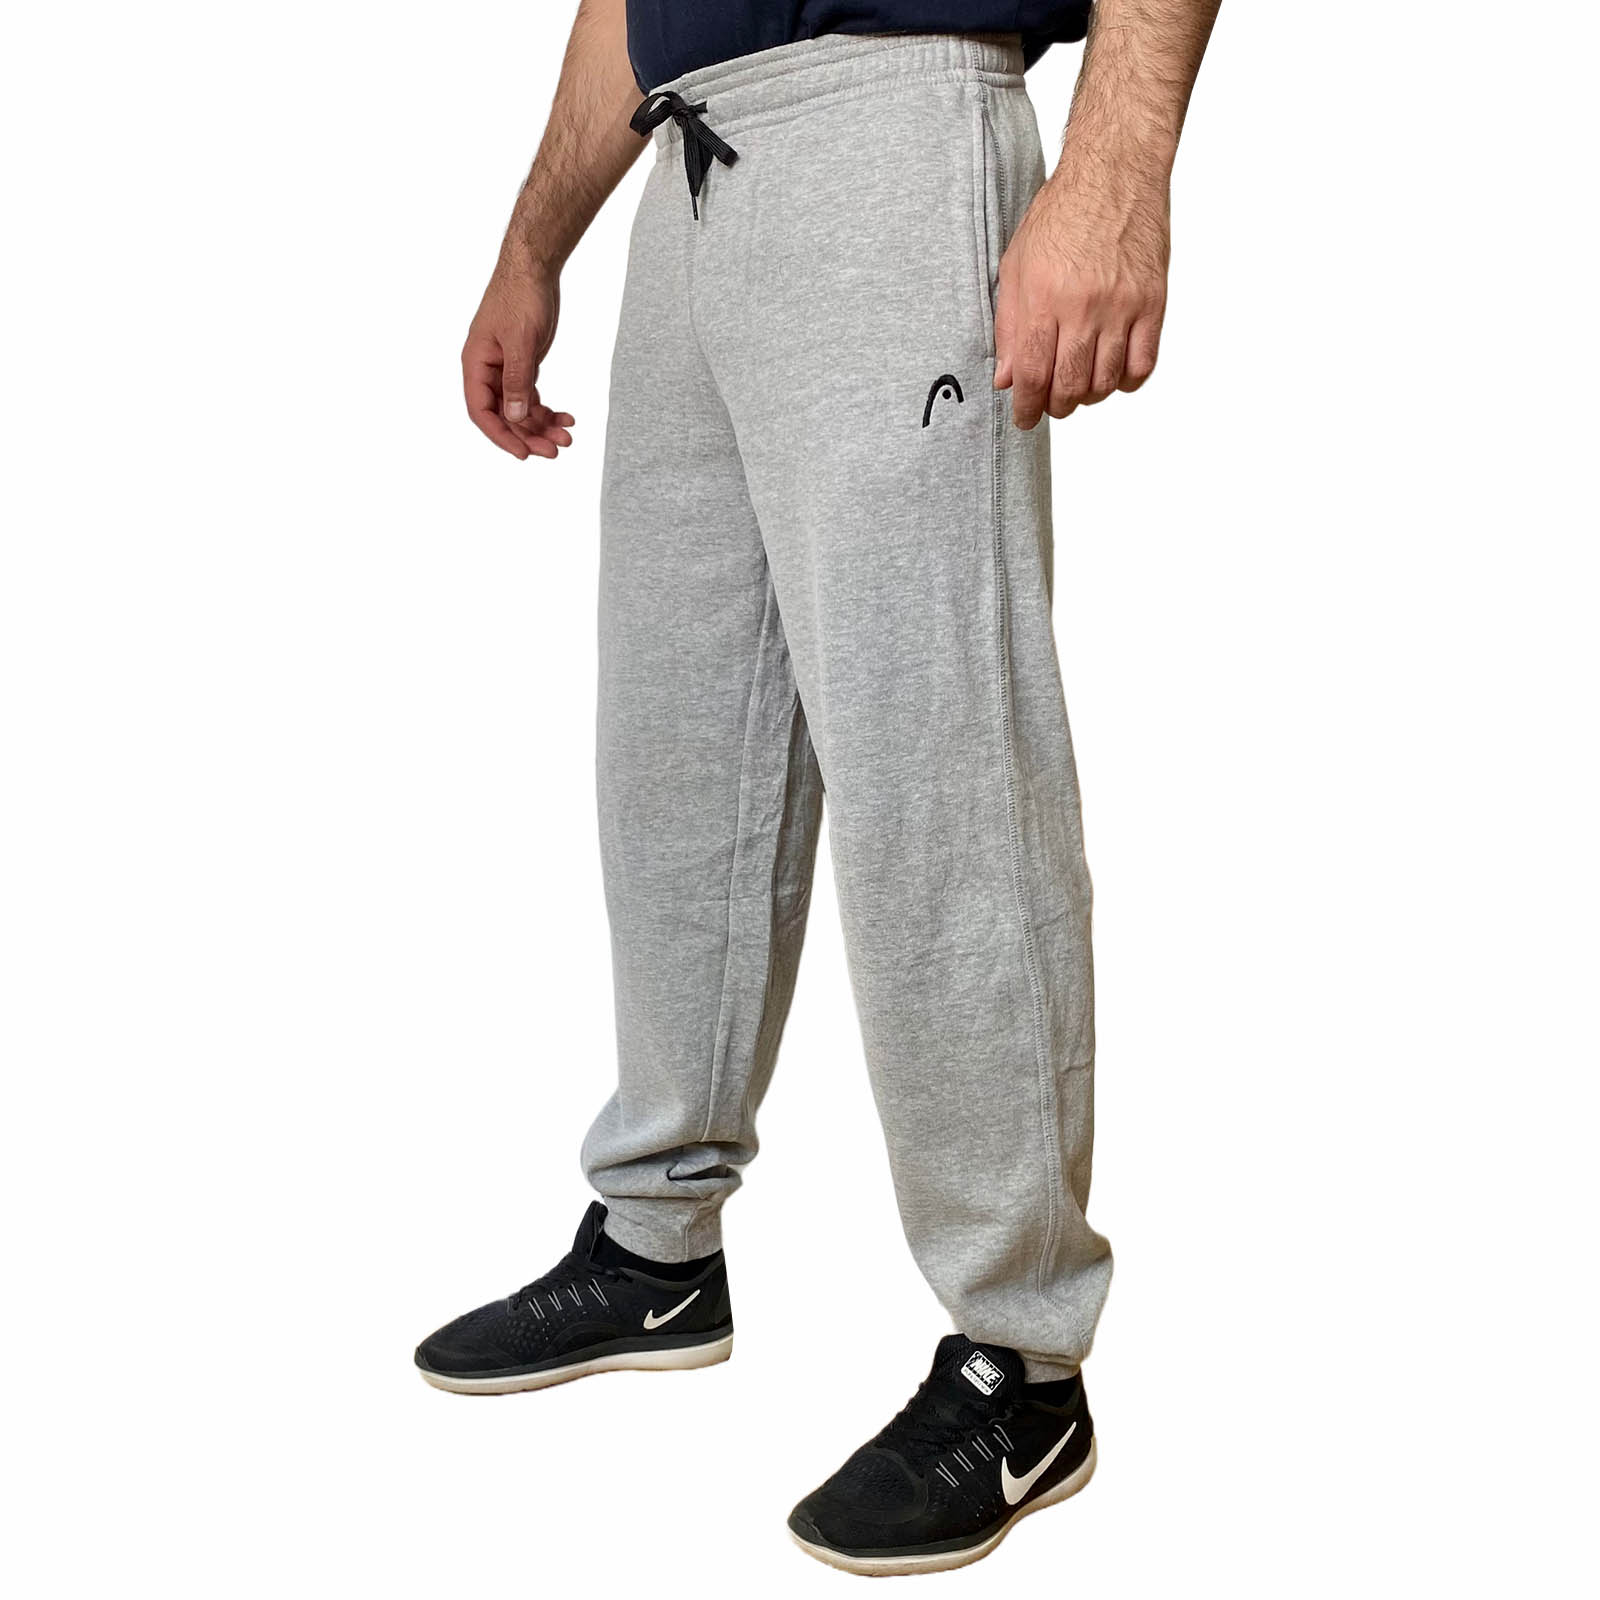 Недорогие спортивные штаны для мужчин 